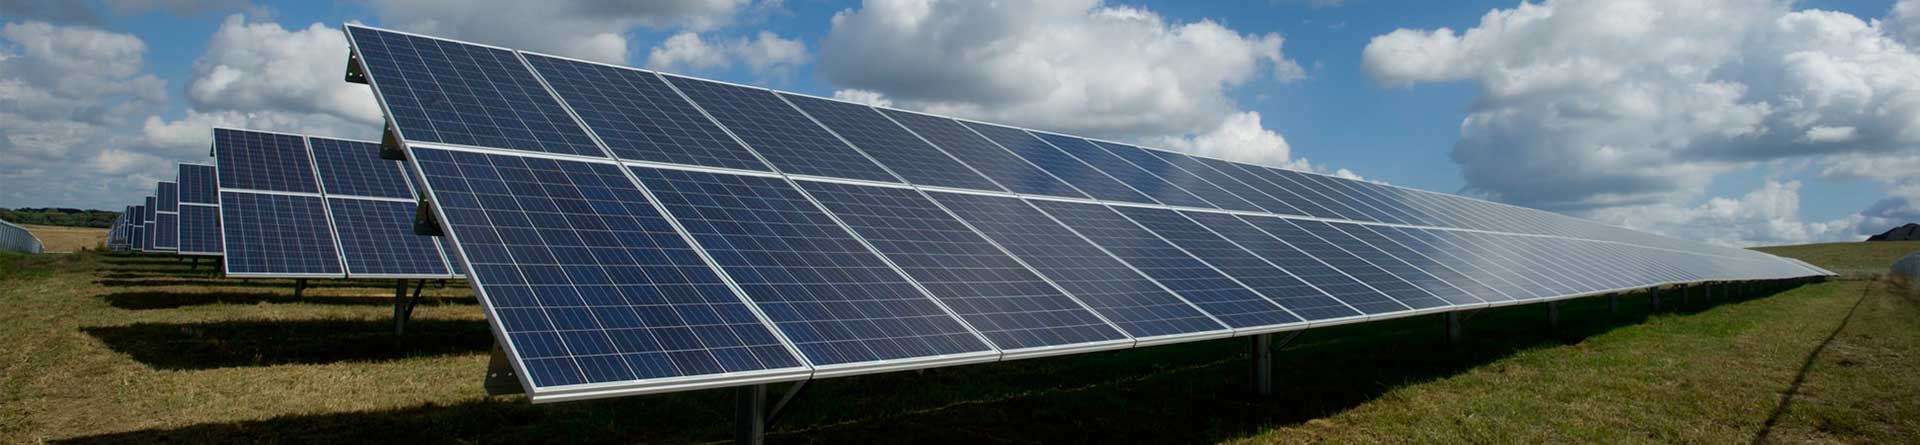 diseño placas solares instalaciones fotovoltaicas